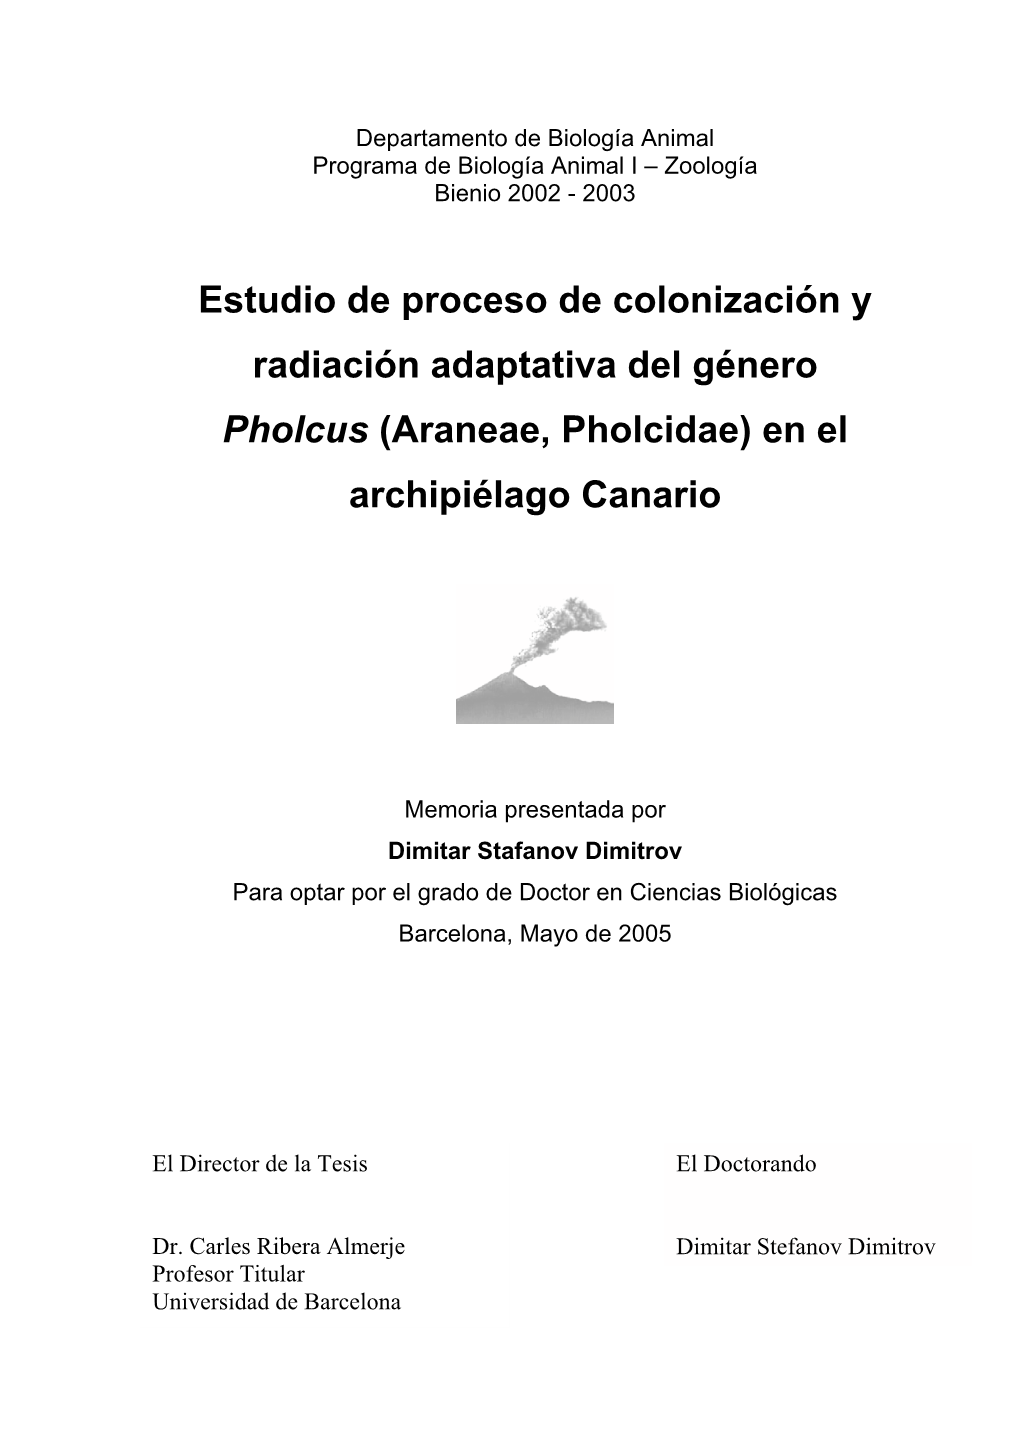 Estudio De Proceso De Colonización Y Radiación Adaptativa Del Género Pholcus (Araneae, Pholcidae) En El Archipiélago Canario